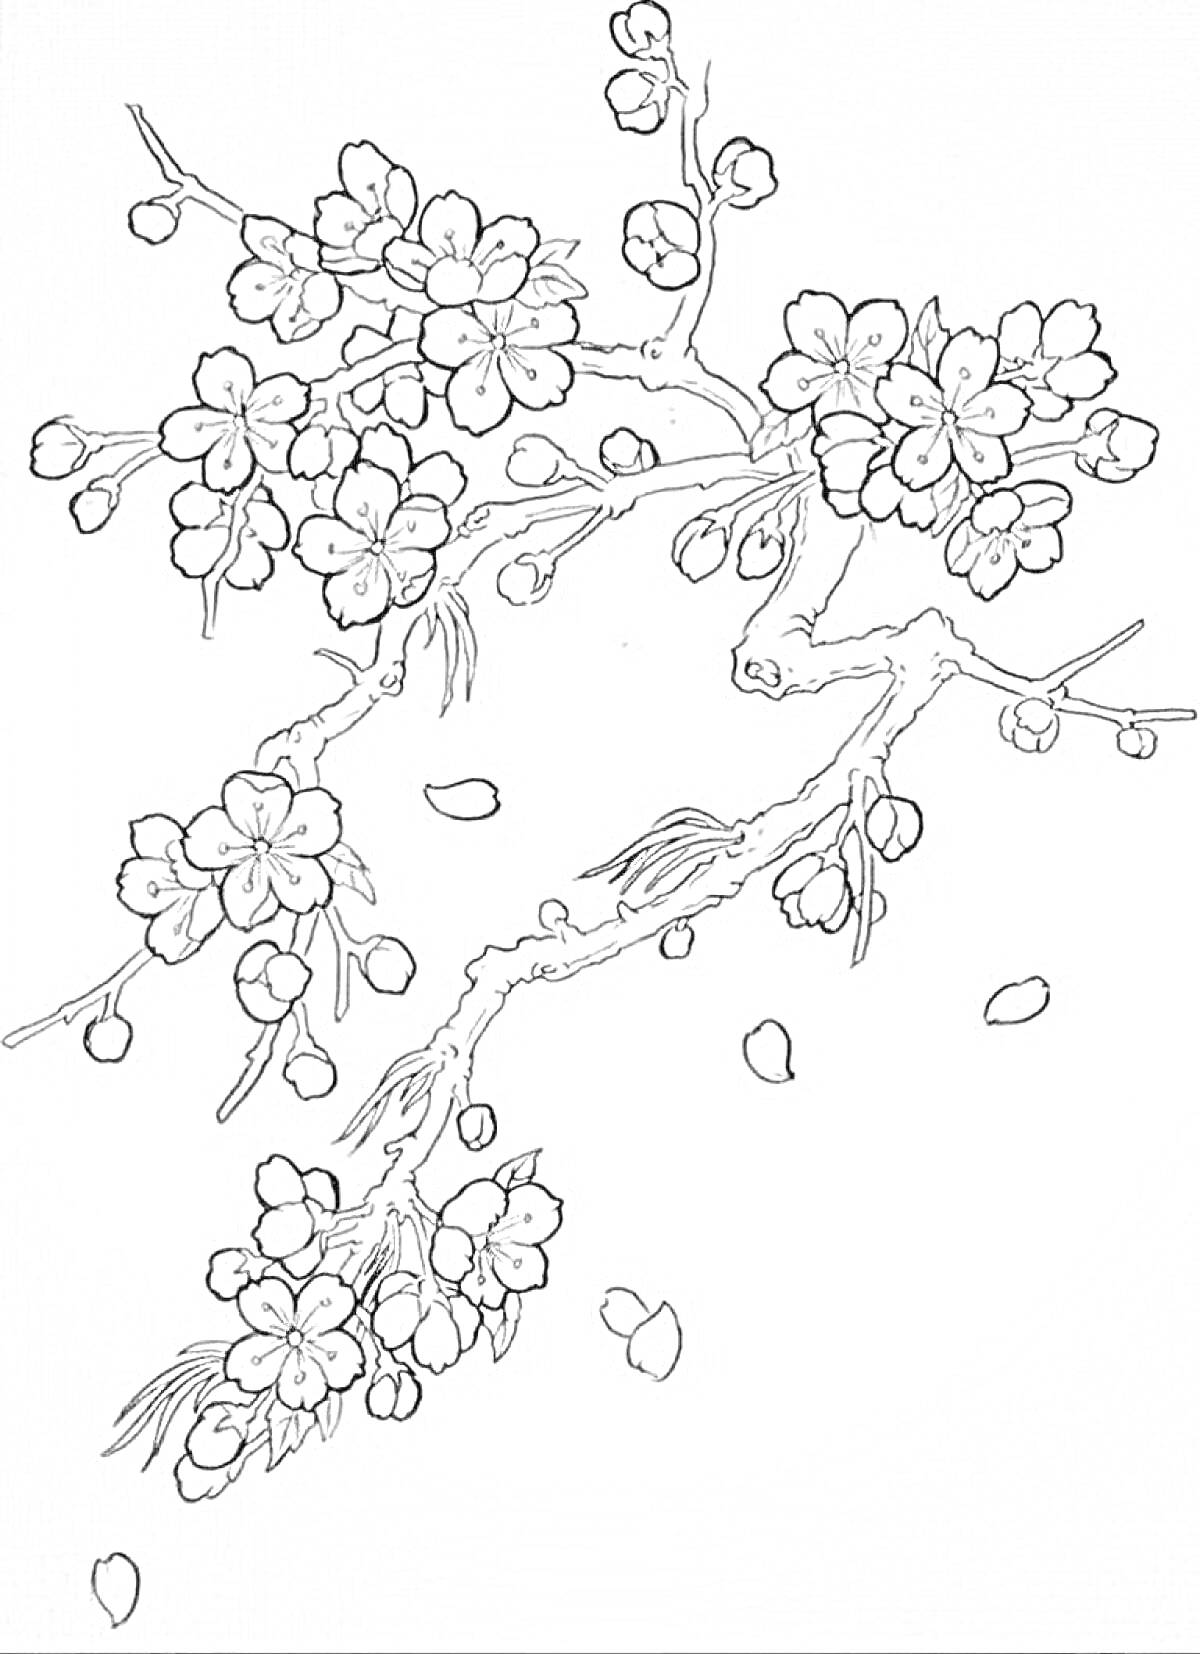 РаскраскаВетвь сакуры с цветками и падающими лепестками